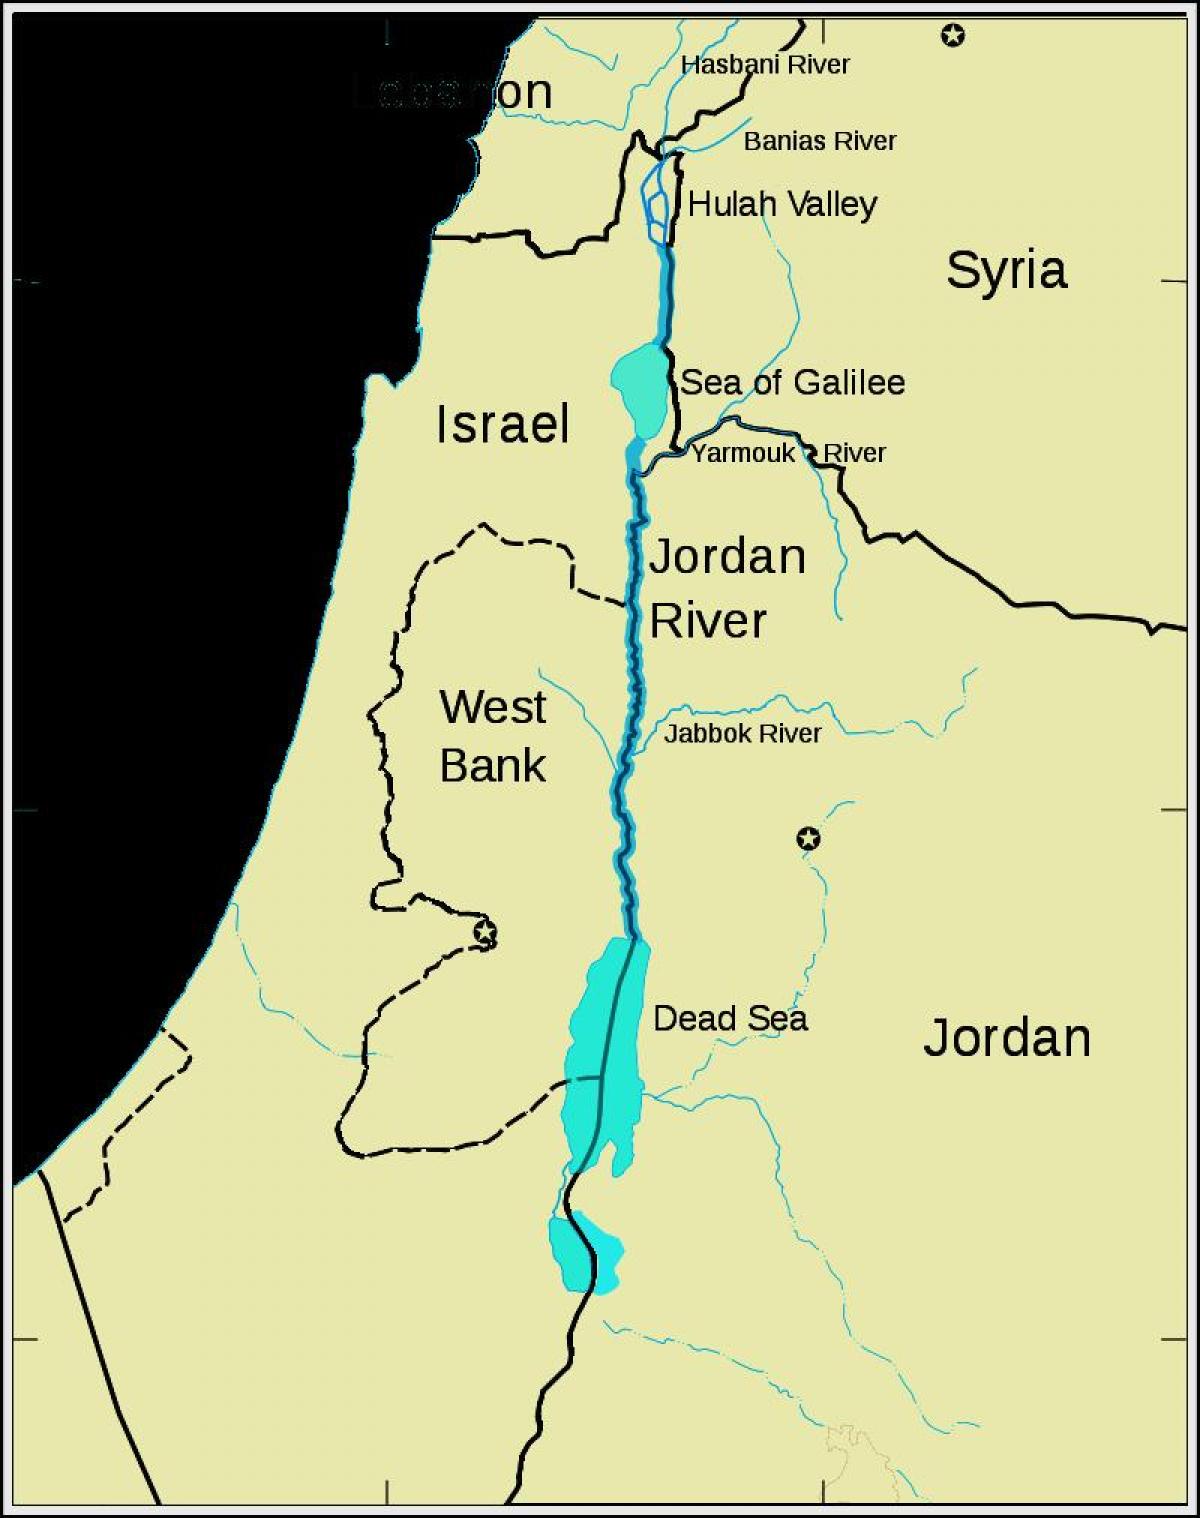 იორდანიის მდინარე ახლო აღმოსავლეთში რუკა